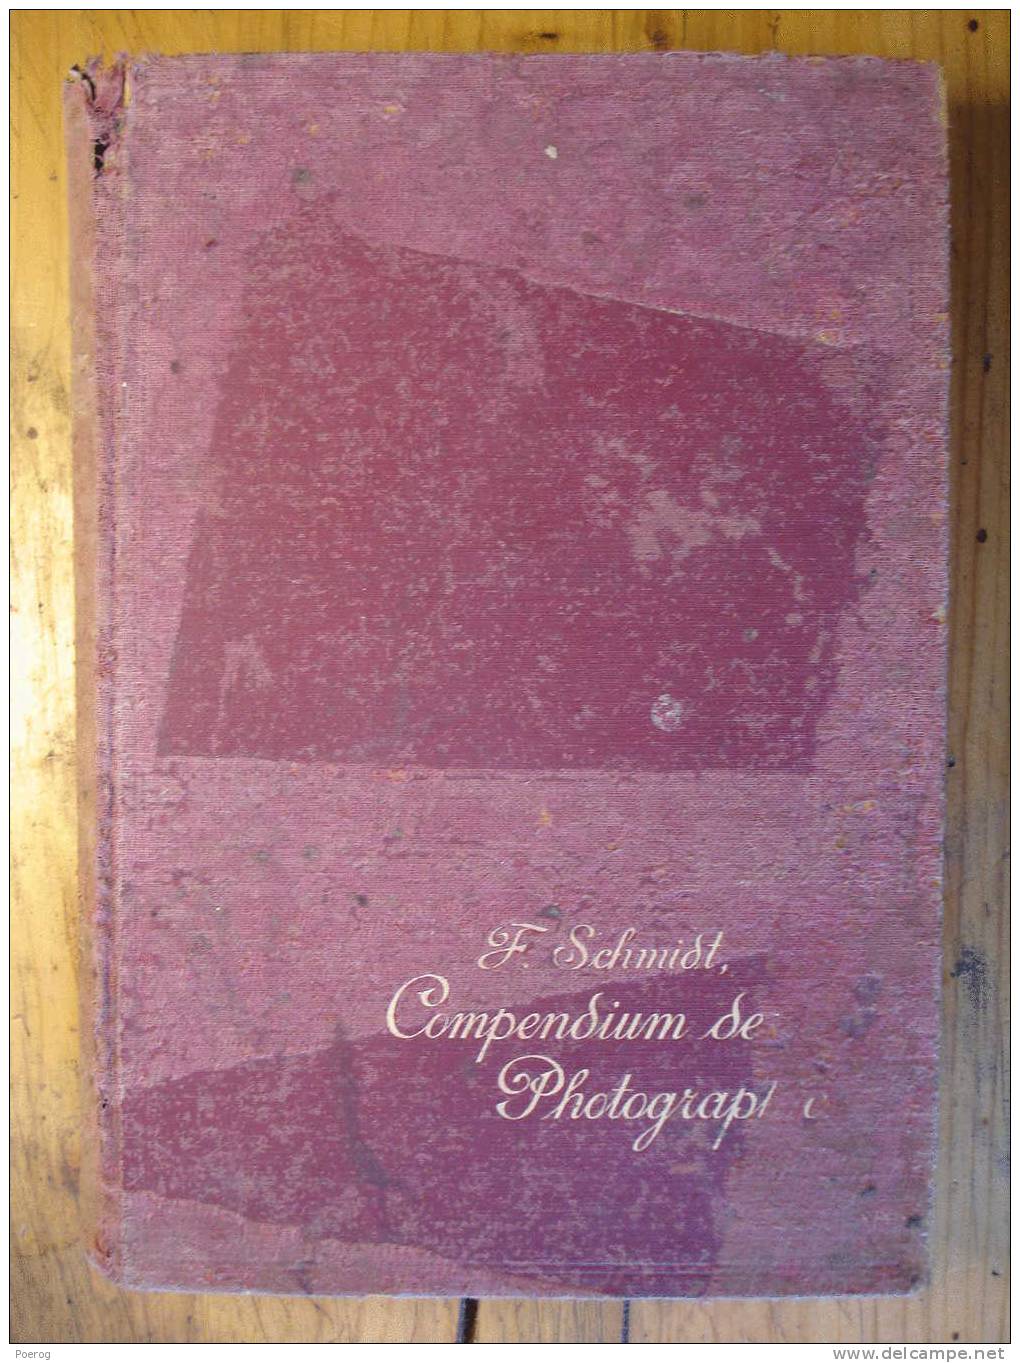 COMPENDIUM DER PRAKTISCHEN PHOTOGRAPHIE Von PROFESSOR FRITZ SCHMIDT - 1912 OTTO NEMNICH VERLAG LEIPZIG KOMPENDIUM - Photographie